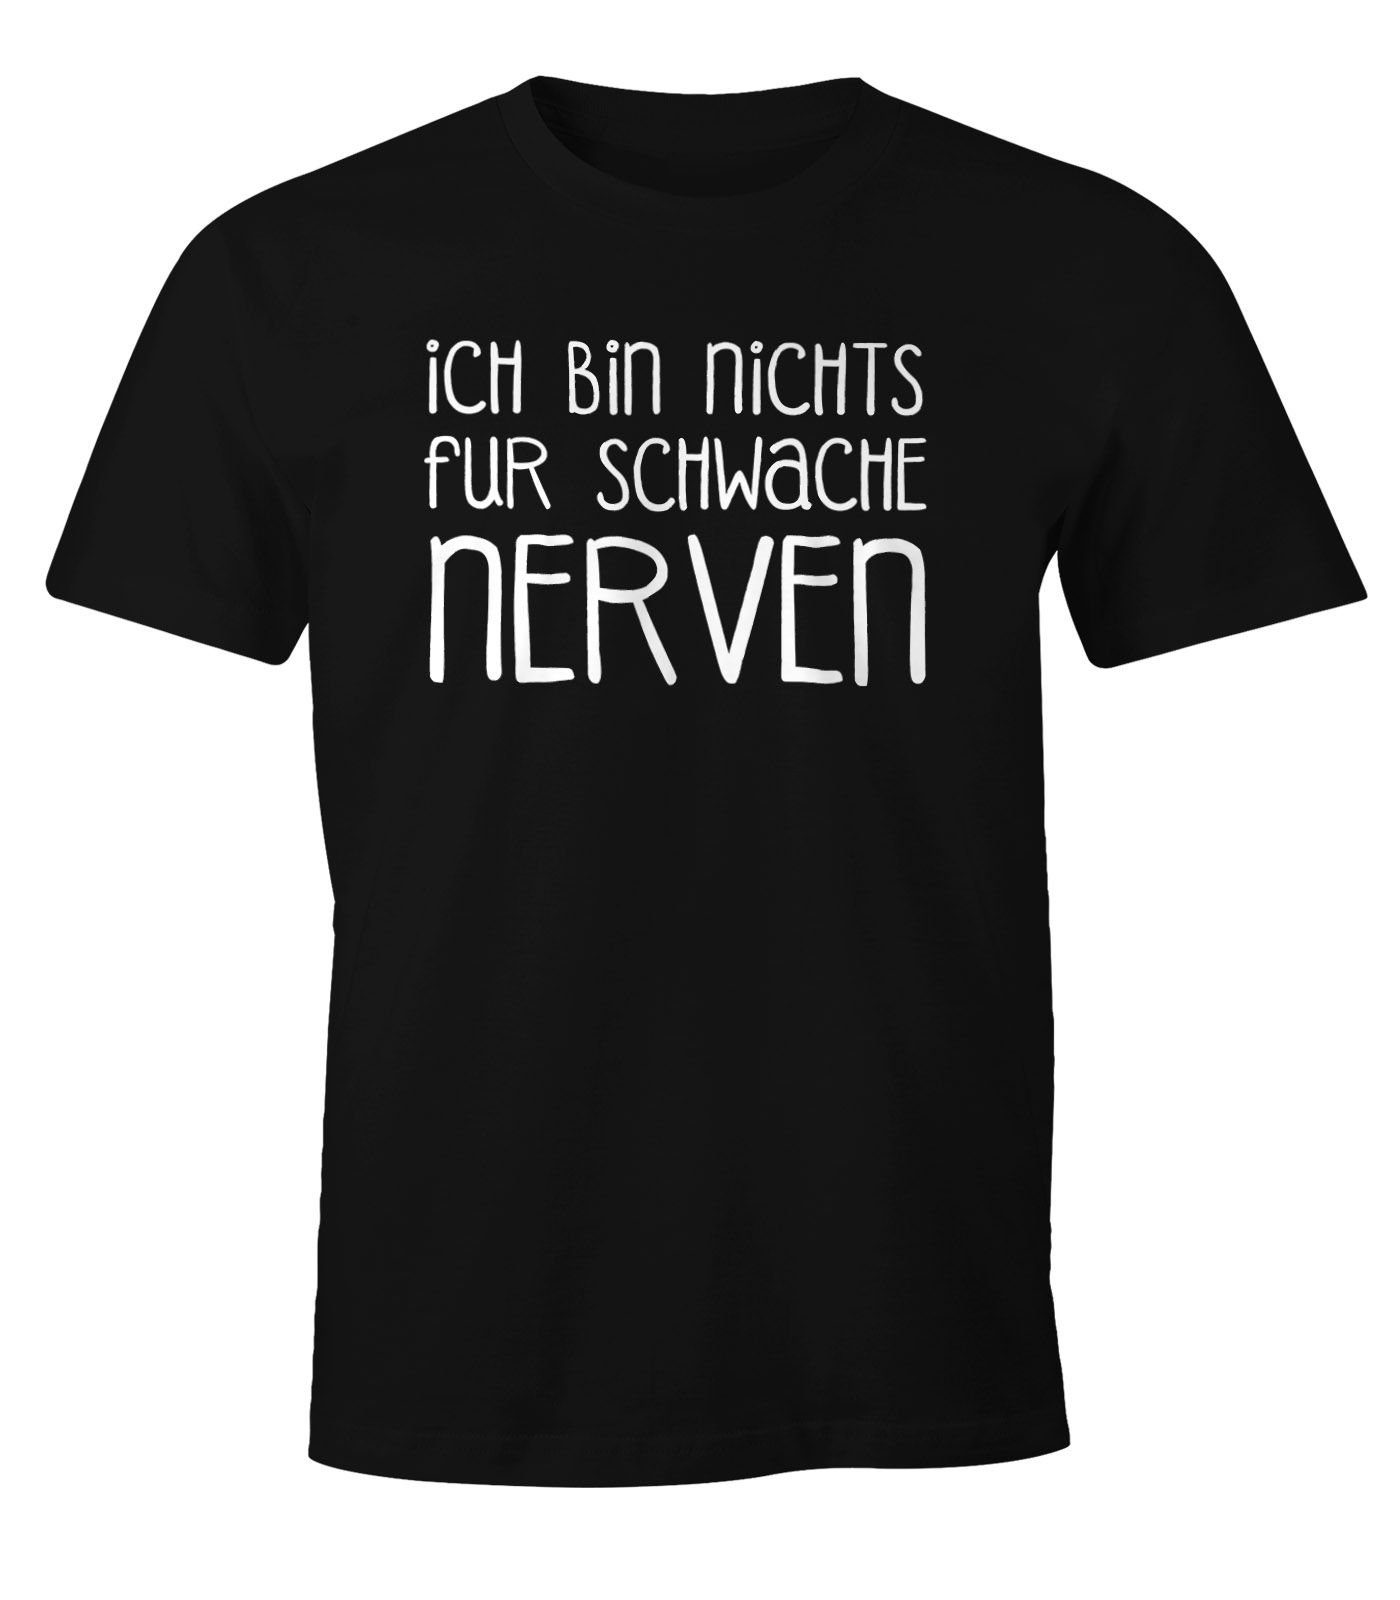 MoonWorks Print-Shirt Lustiges Herren T-Shirt Ich bin nichts für schwache Nerven Fun Shirt Moonworks® mit Print | T-Shirts